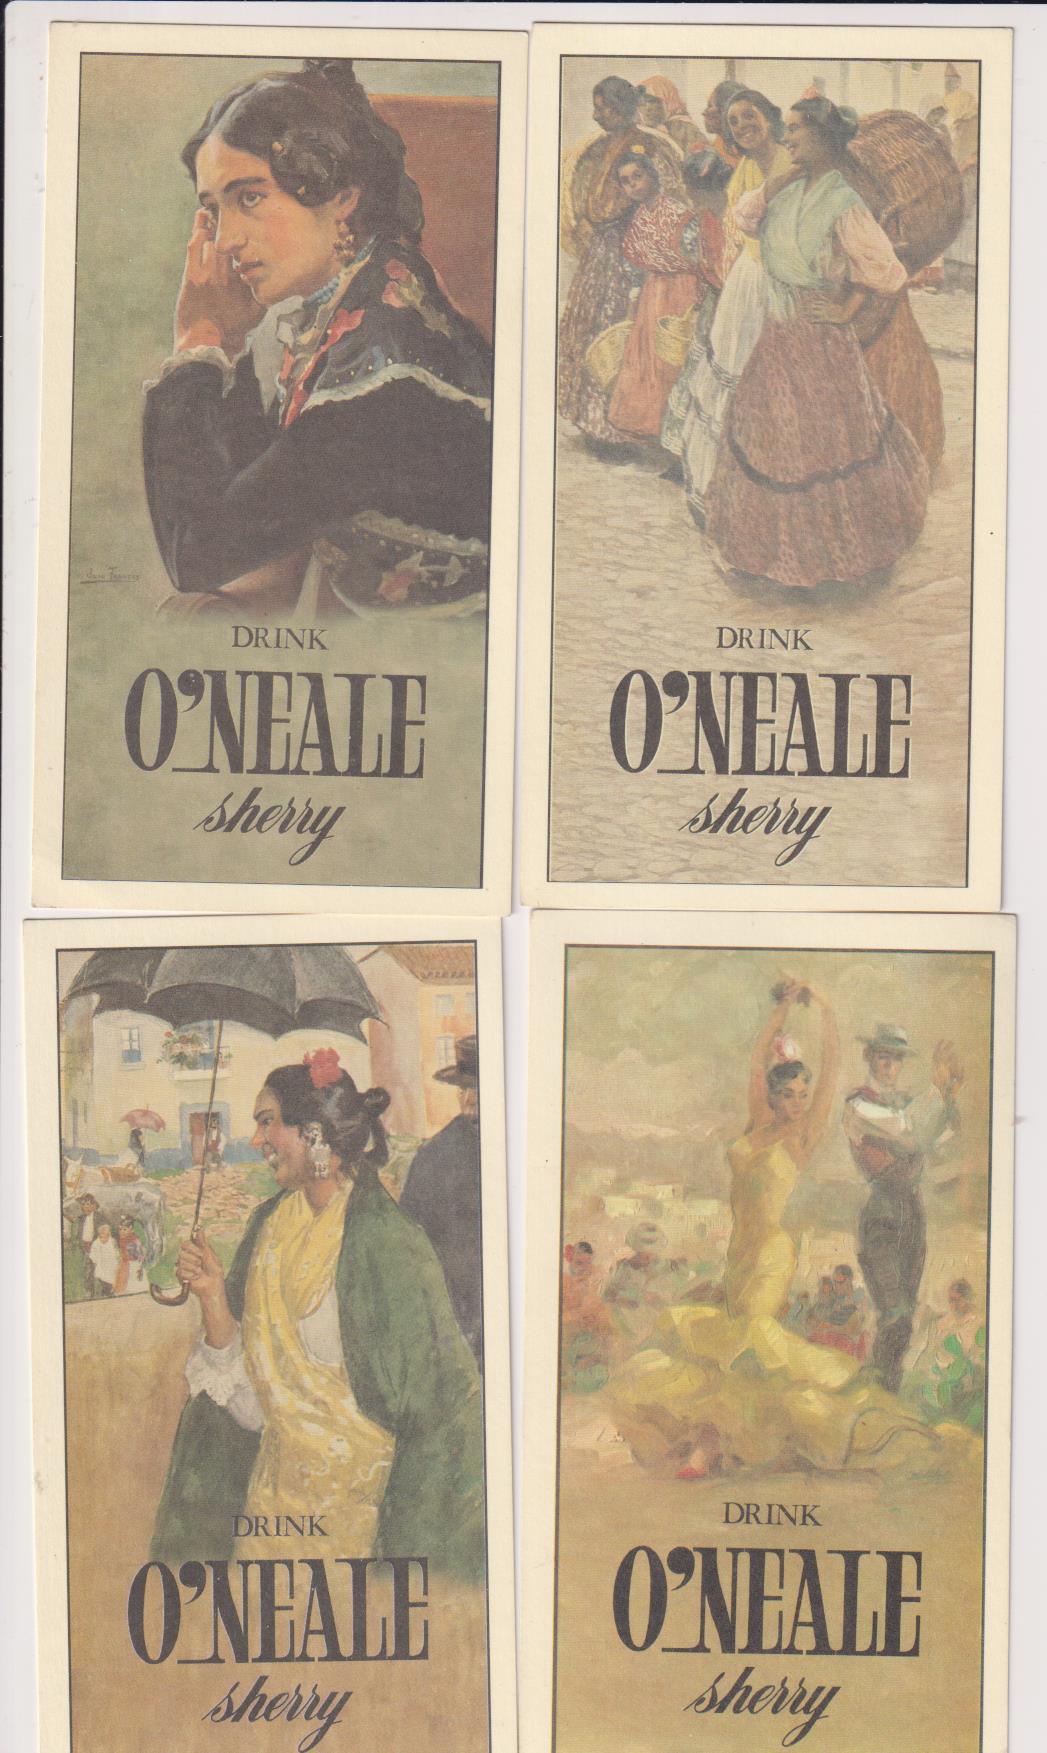 Lote de 4 Tarjetas Postales. Publicidad de Sherry O´Nealy. Editadas por Colección P.C.P. Sevilla